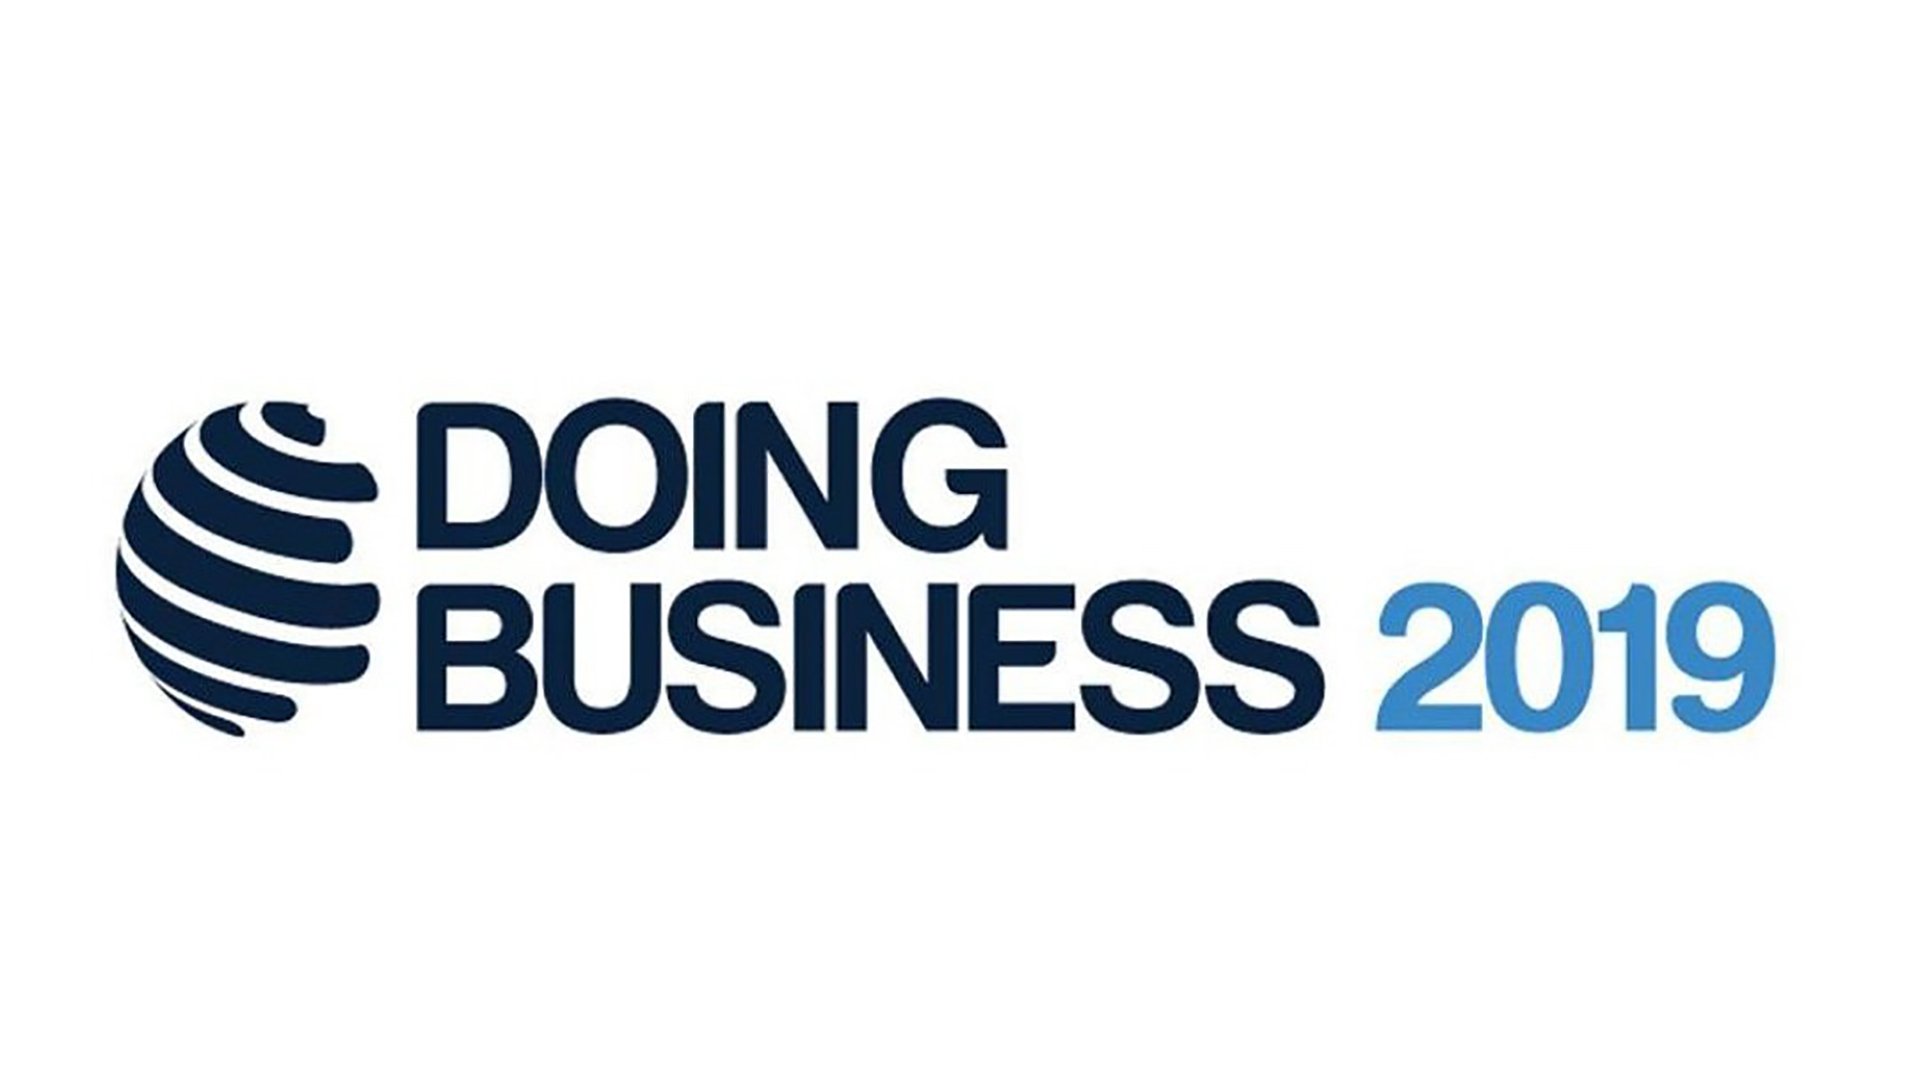 Қазақстан Doing Business рейтингінде 25-орынға көтерілді